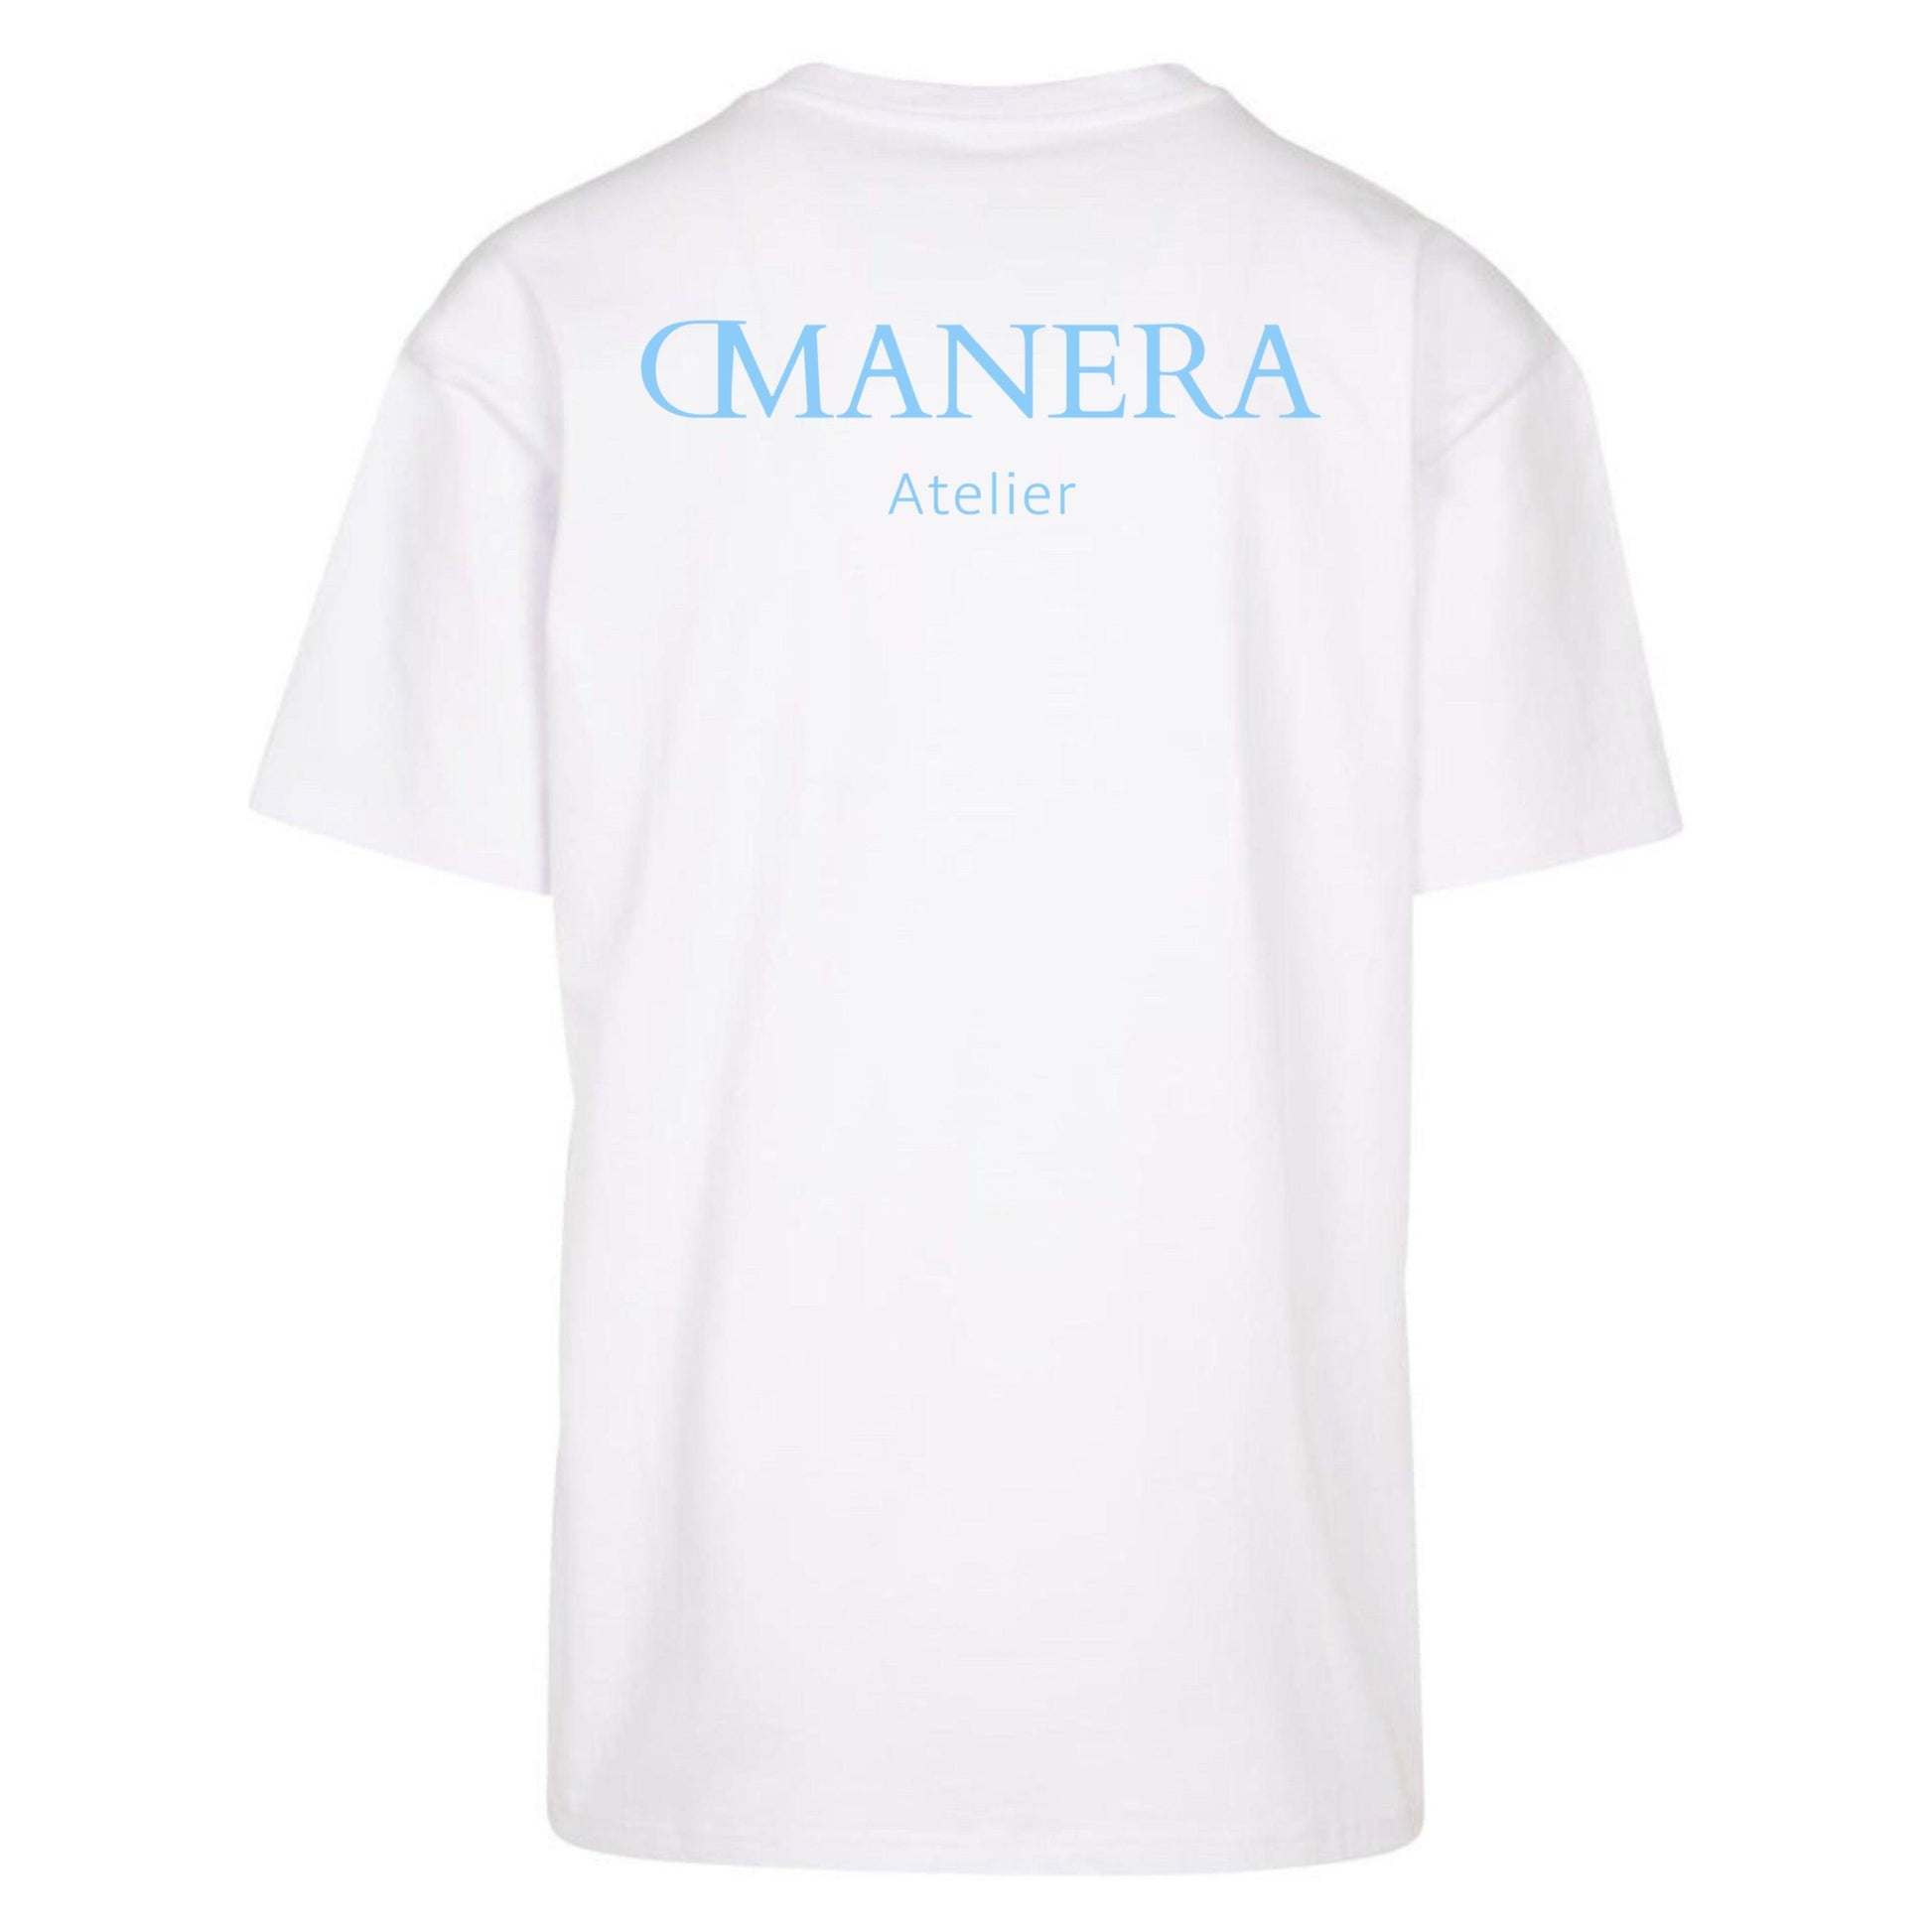 Oversize Shirt White/Lightblue 240 g/m² - DMANERA Atelier